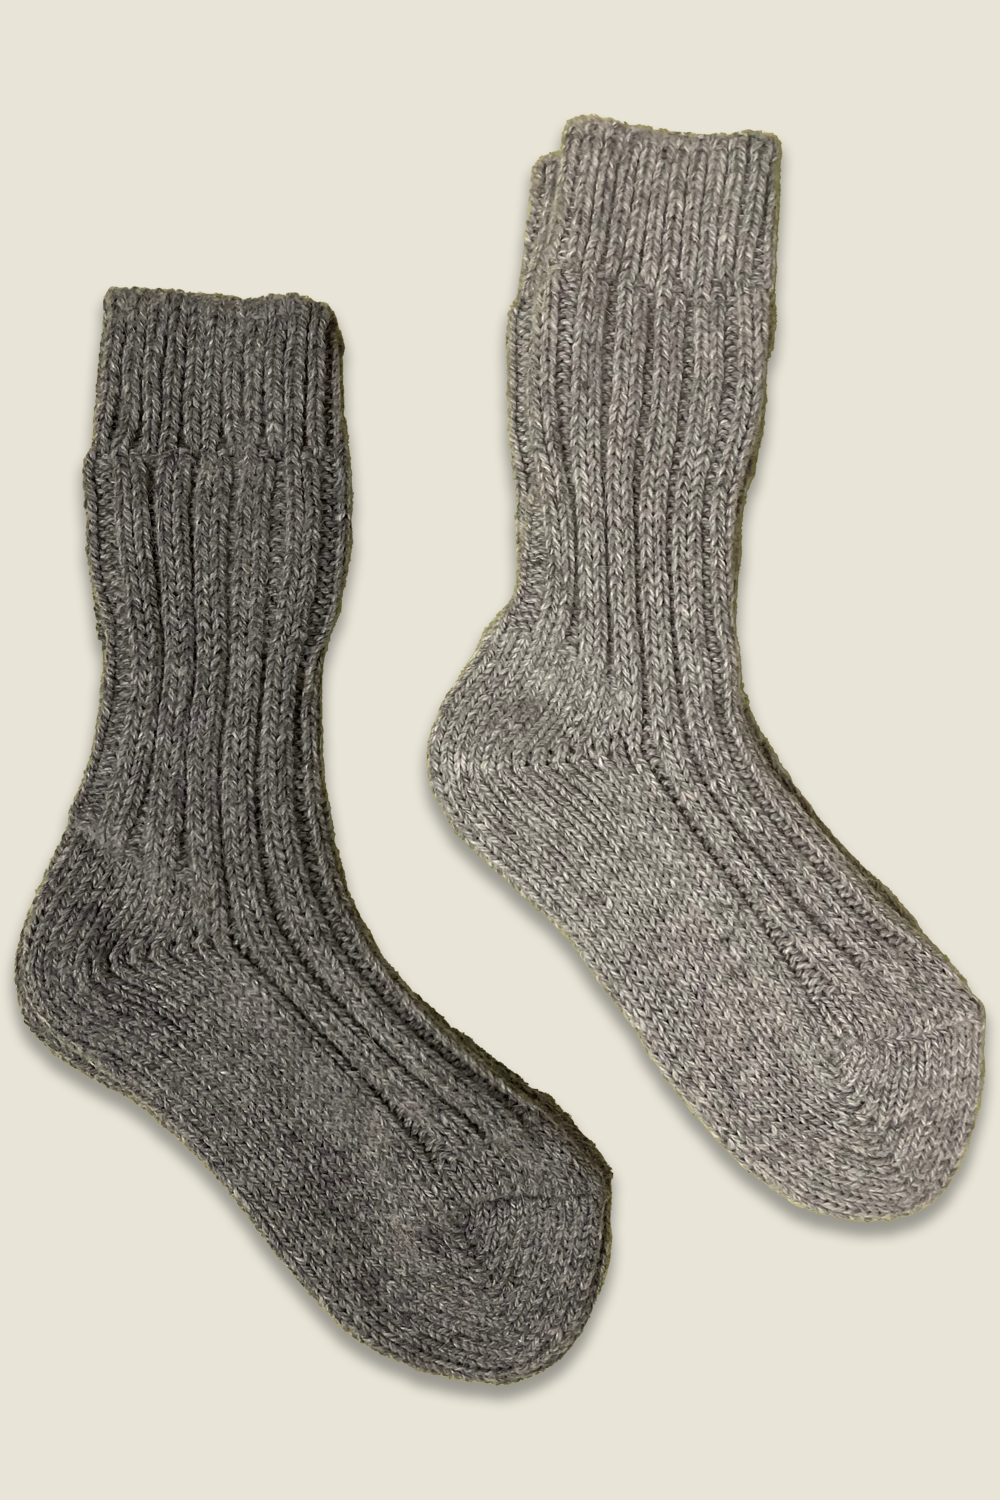 Calzini di alpaca - grigio e grigio scuro - 2 paia